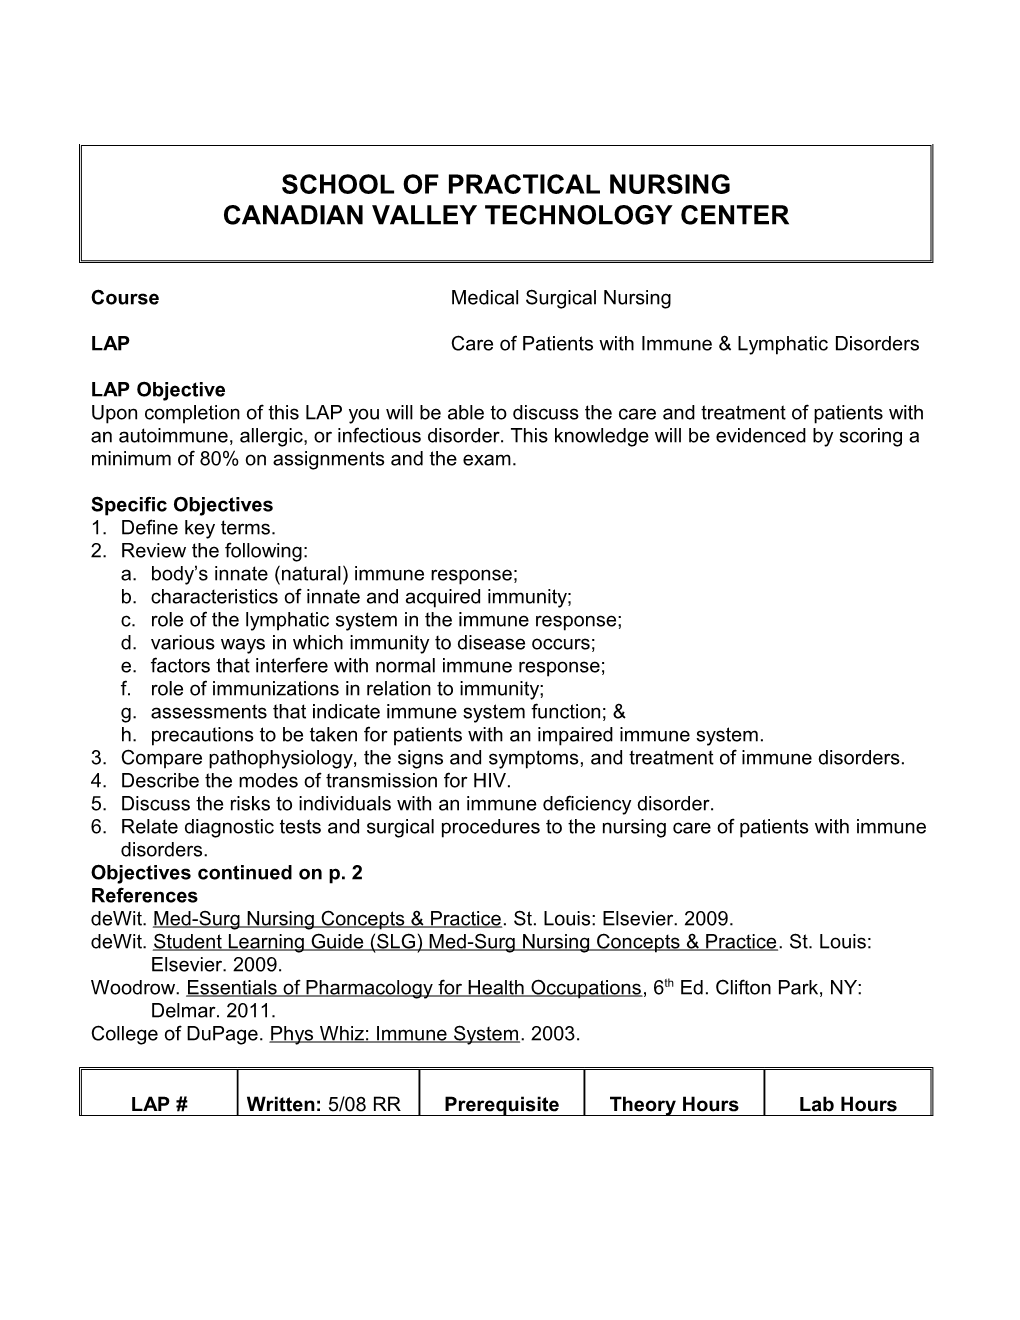 School of Practical Nursing